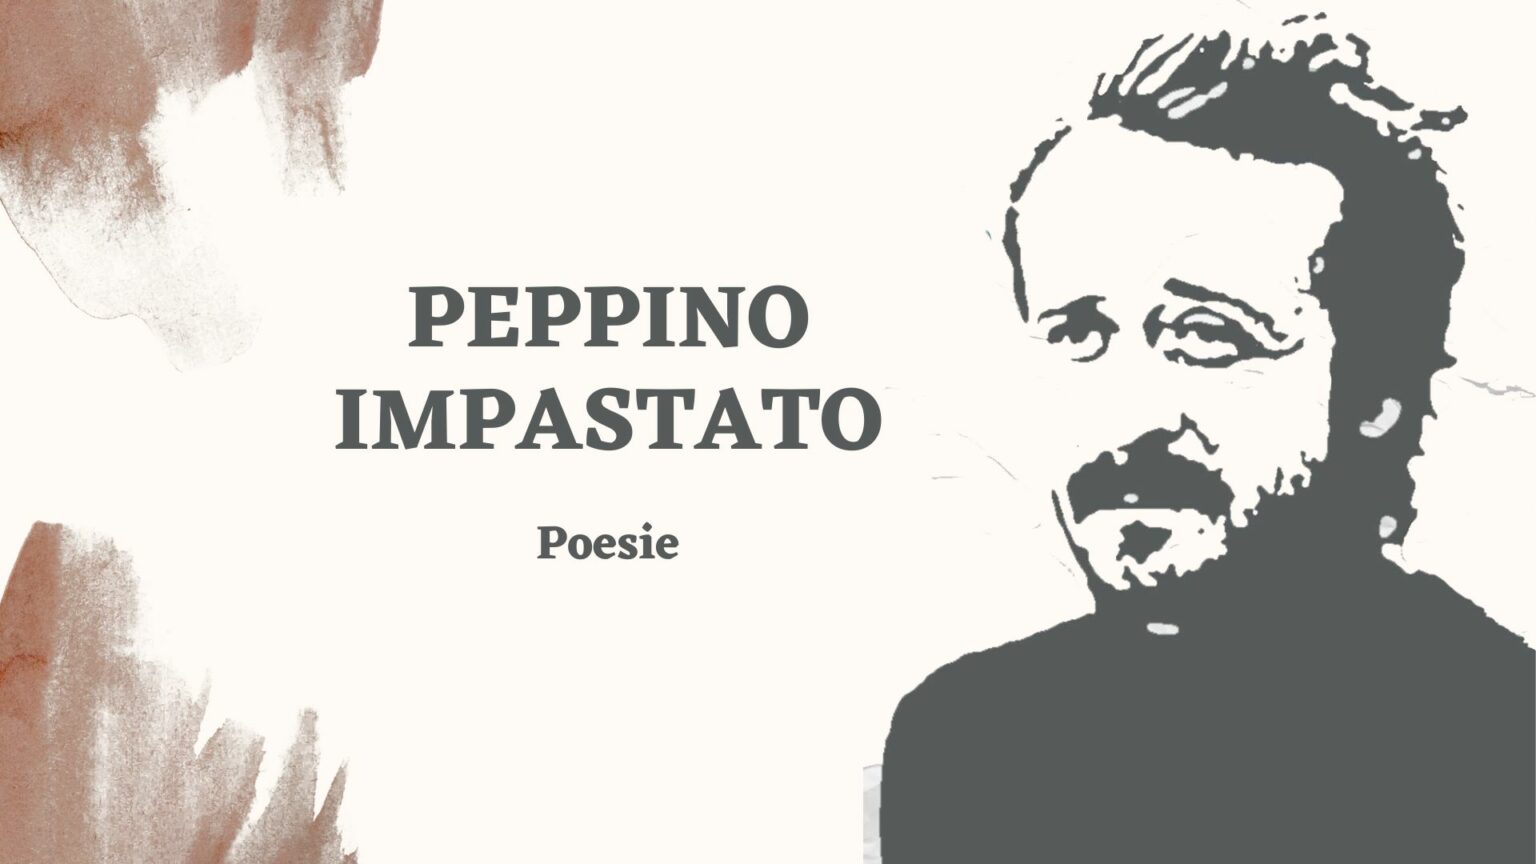 Peppino Impastato poesie